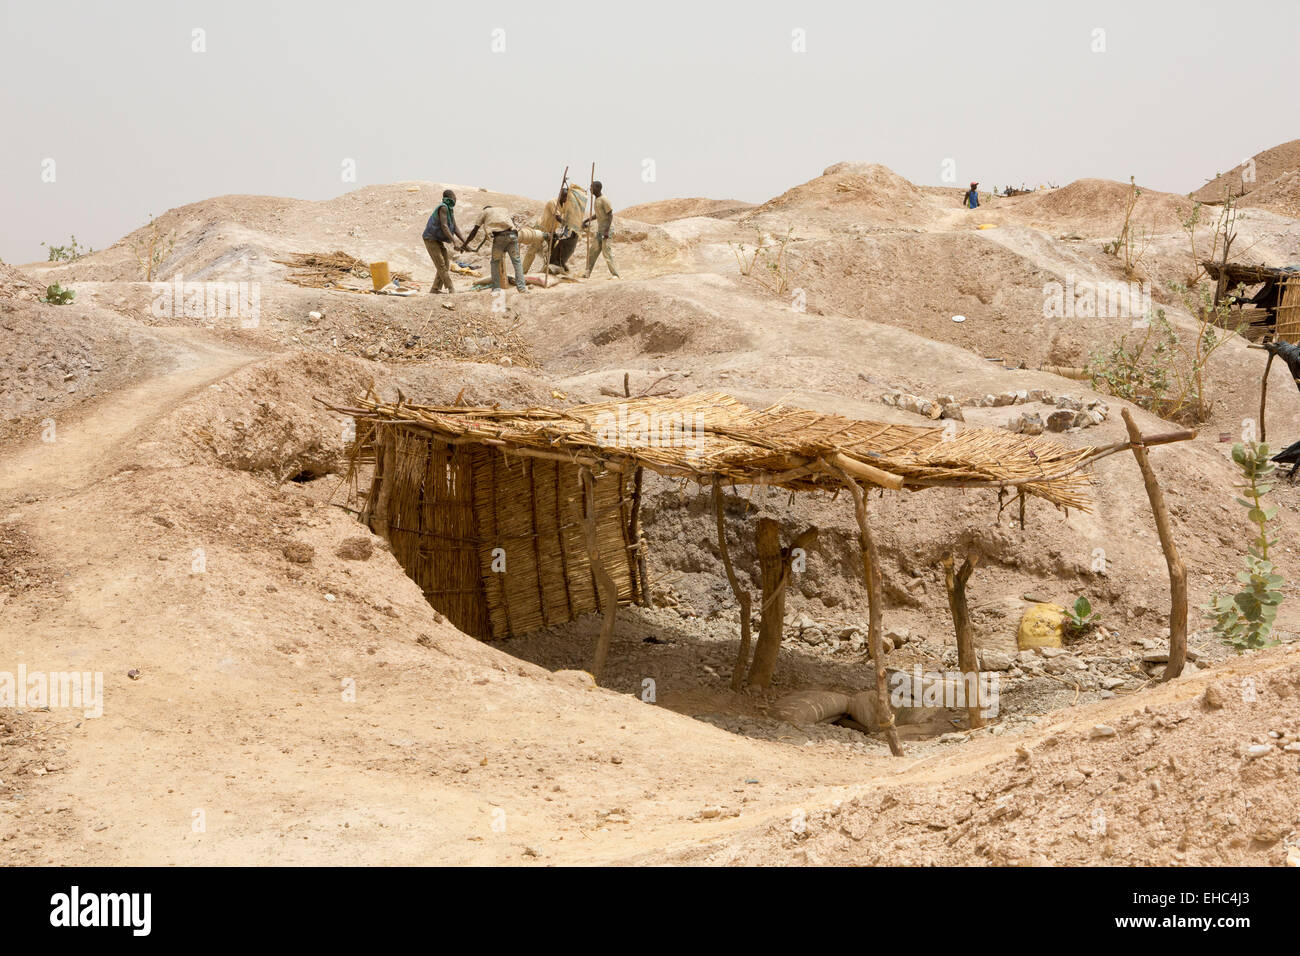 Komobangau gold mines, Niger, 18 mai 2012 : les mineurs au travail. La terre est truffée d'ouvrir des puits de mine. Banque D'Images